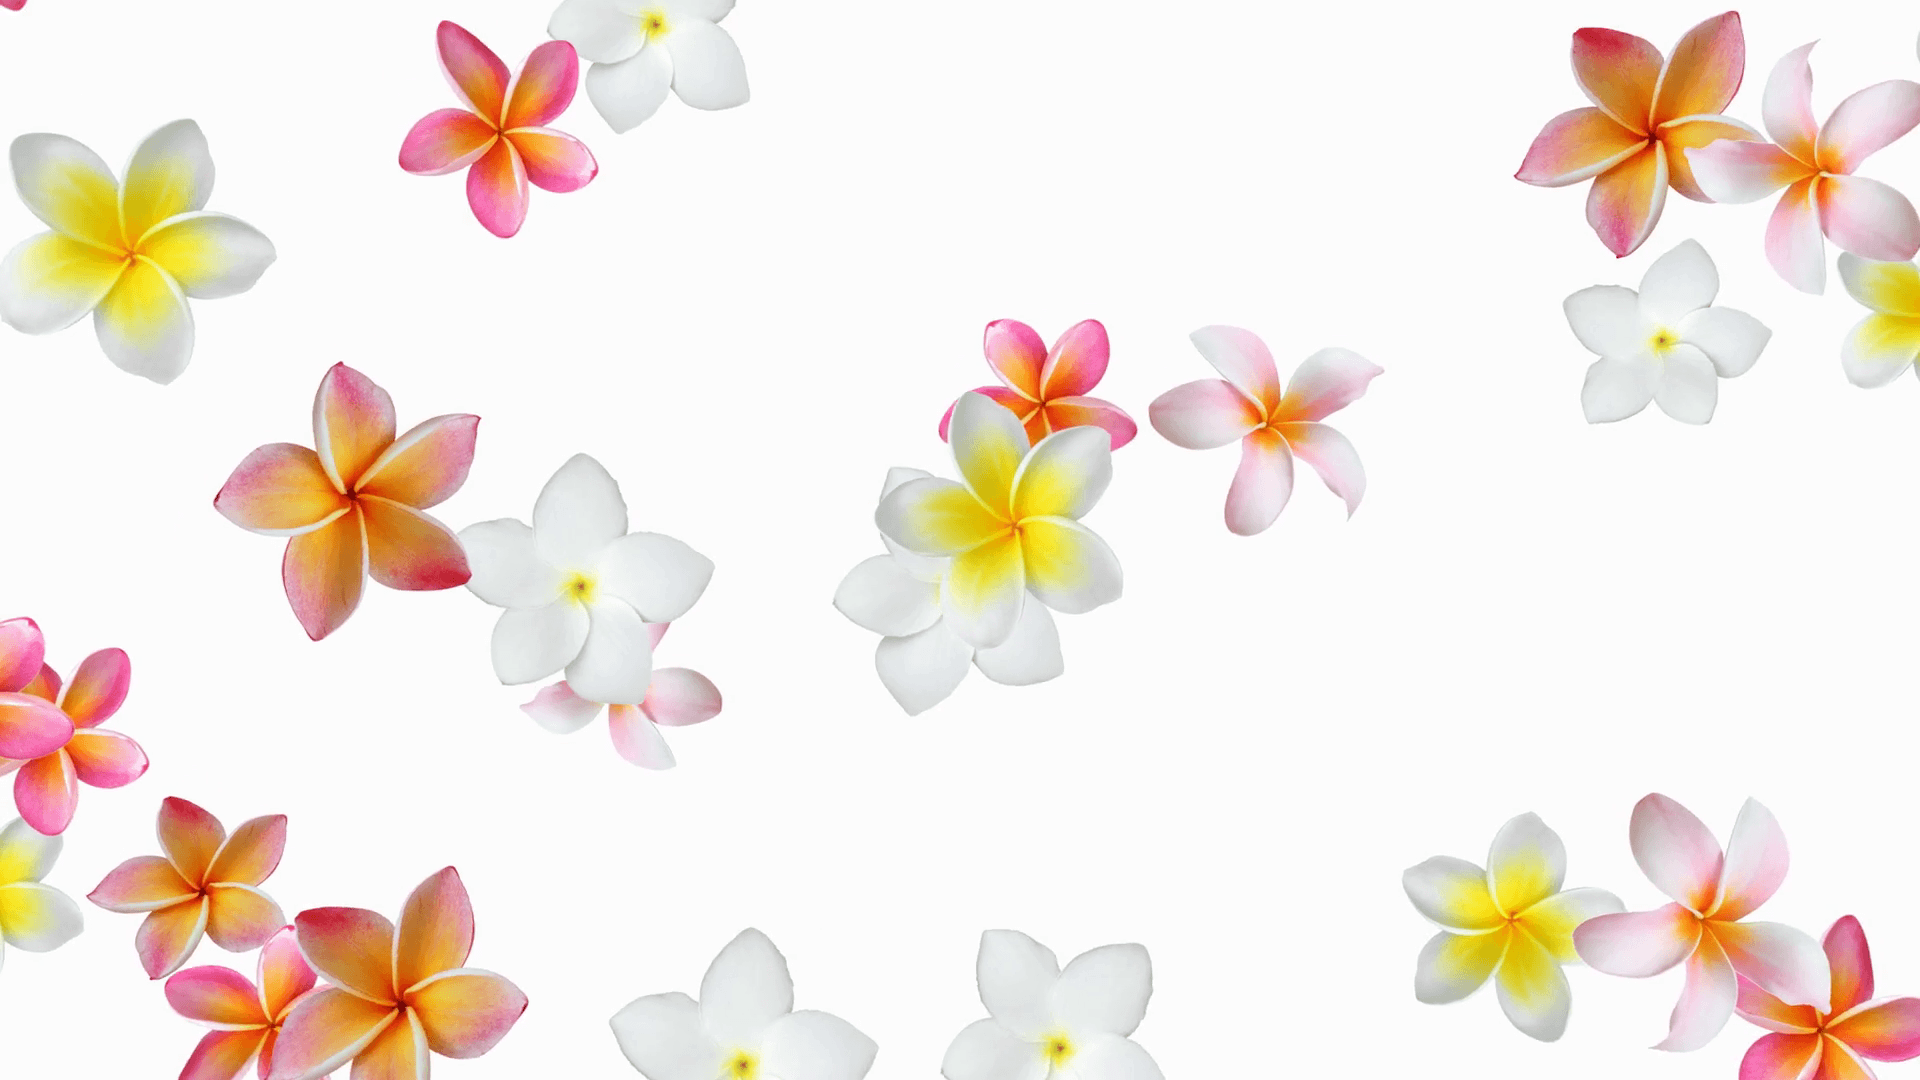 Flower background animation (Frangipani, Plumeria)